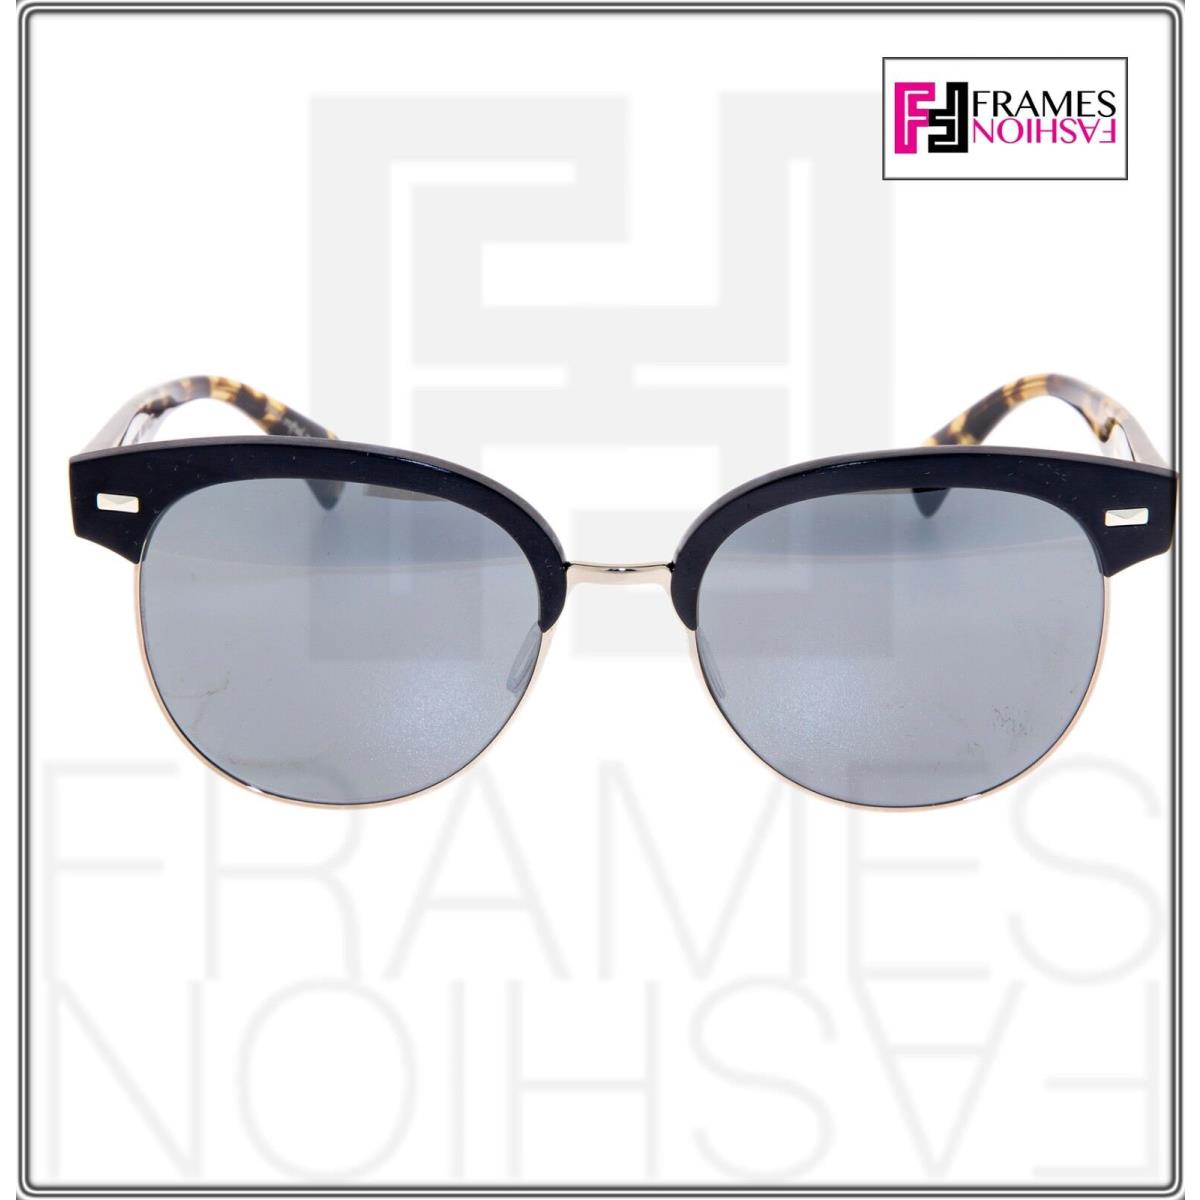 Oliver Peoples sunglasses  - 5222/6G , Matte Black Havana Frame, Grey Silver Lens 4